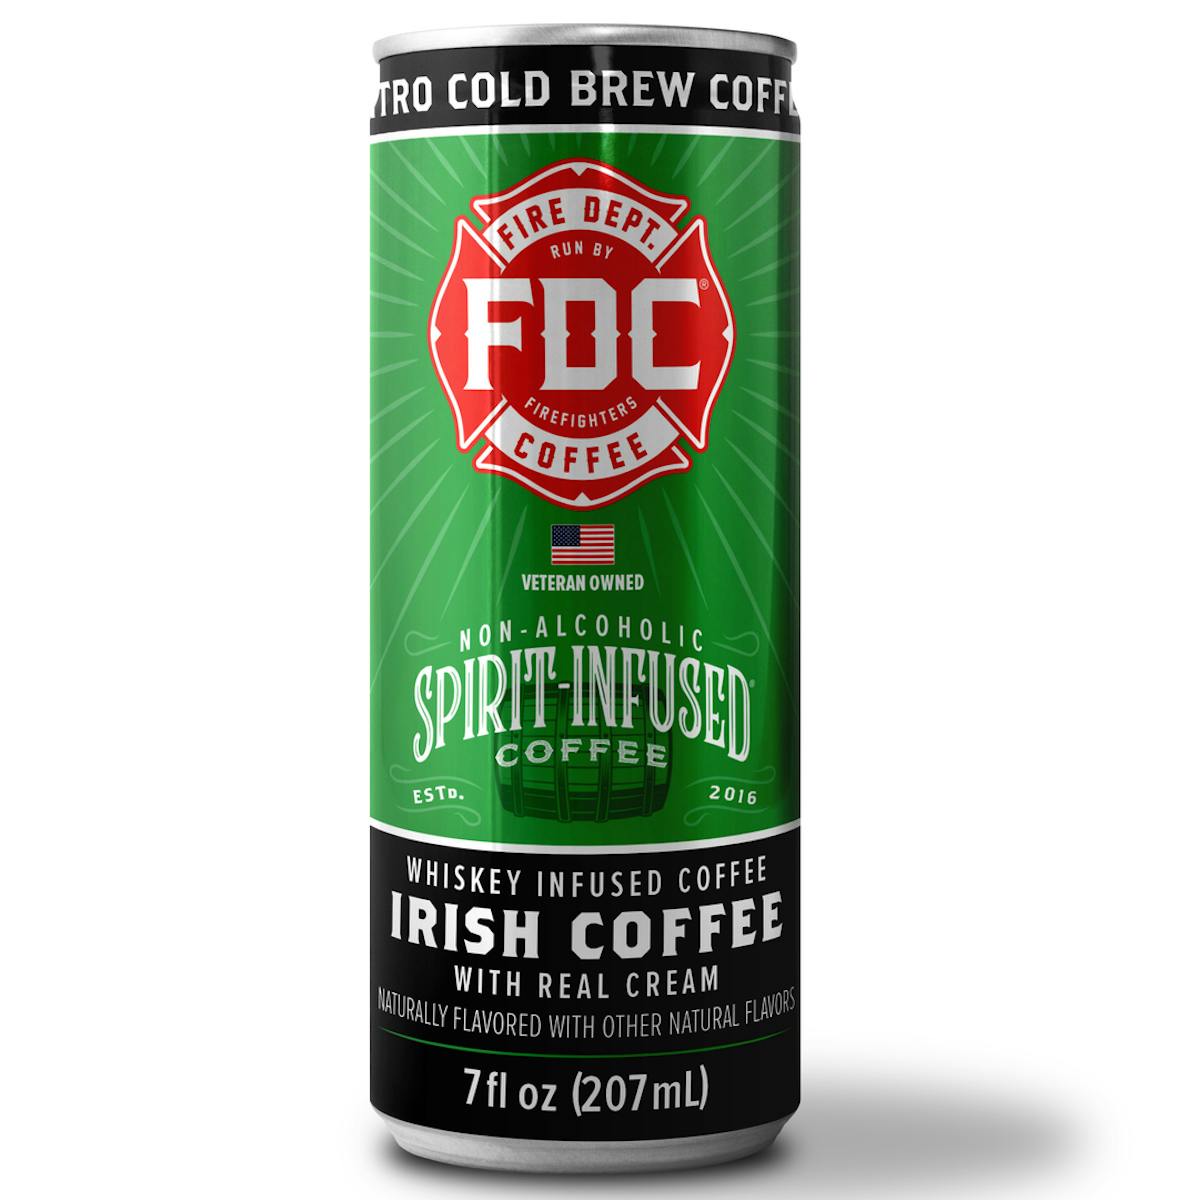 Fdc Irish Coffee